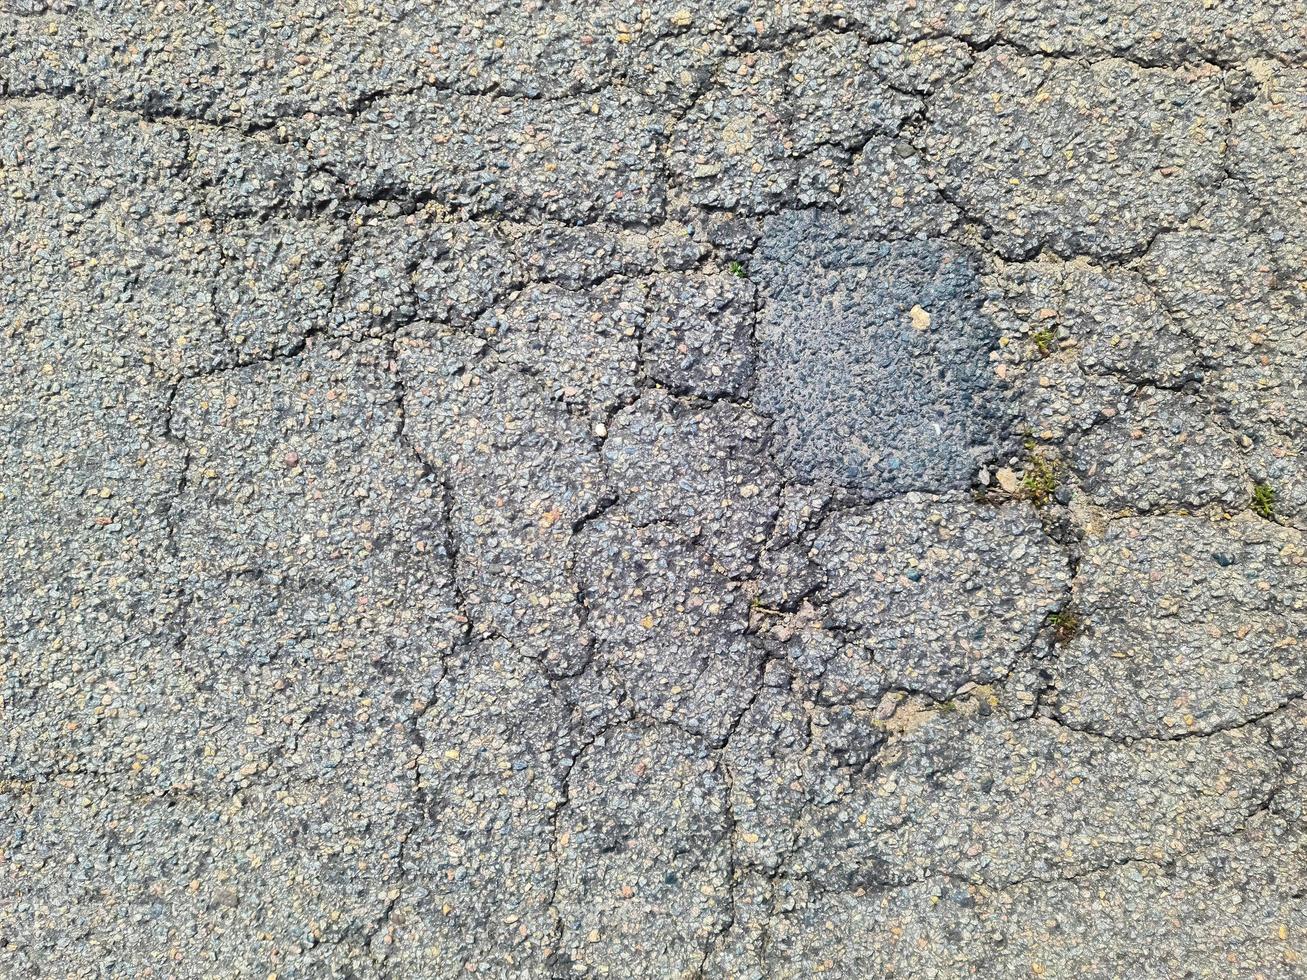 superficies de asfalto de calles y caminos dañados con grietas en un primer plano. foto